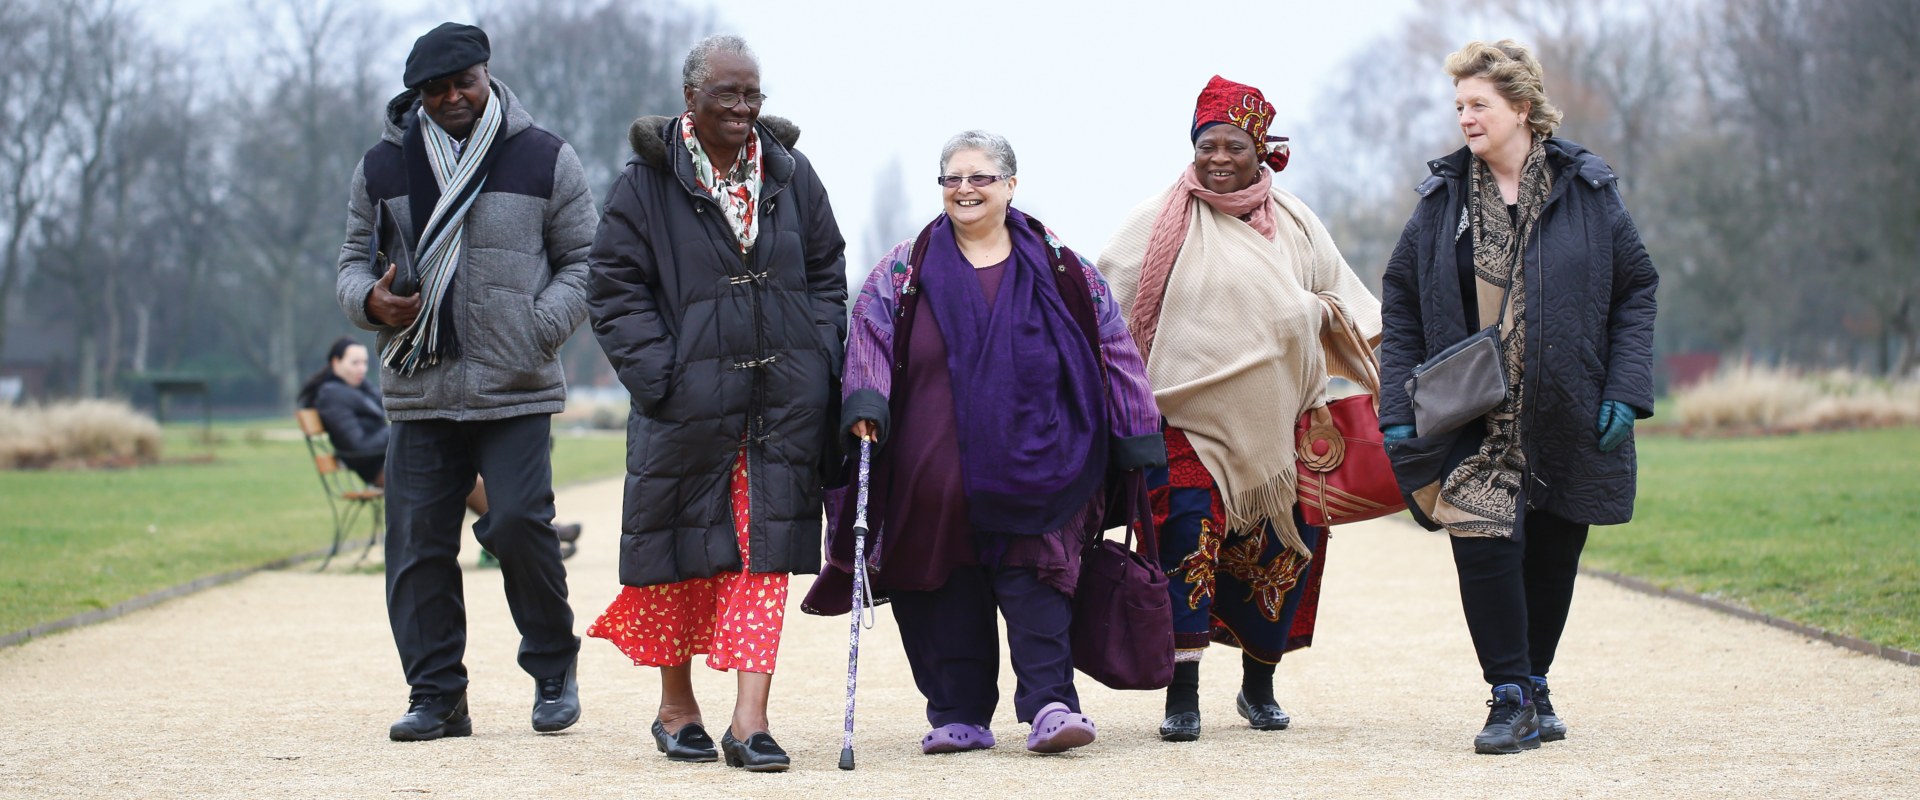 Group of elderly people walking in park